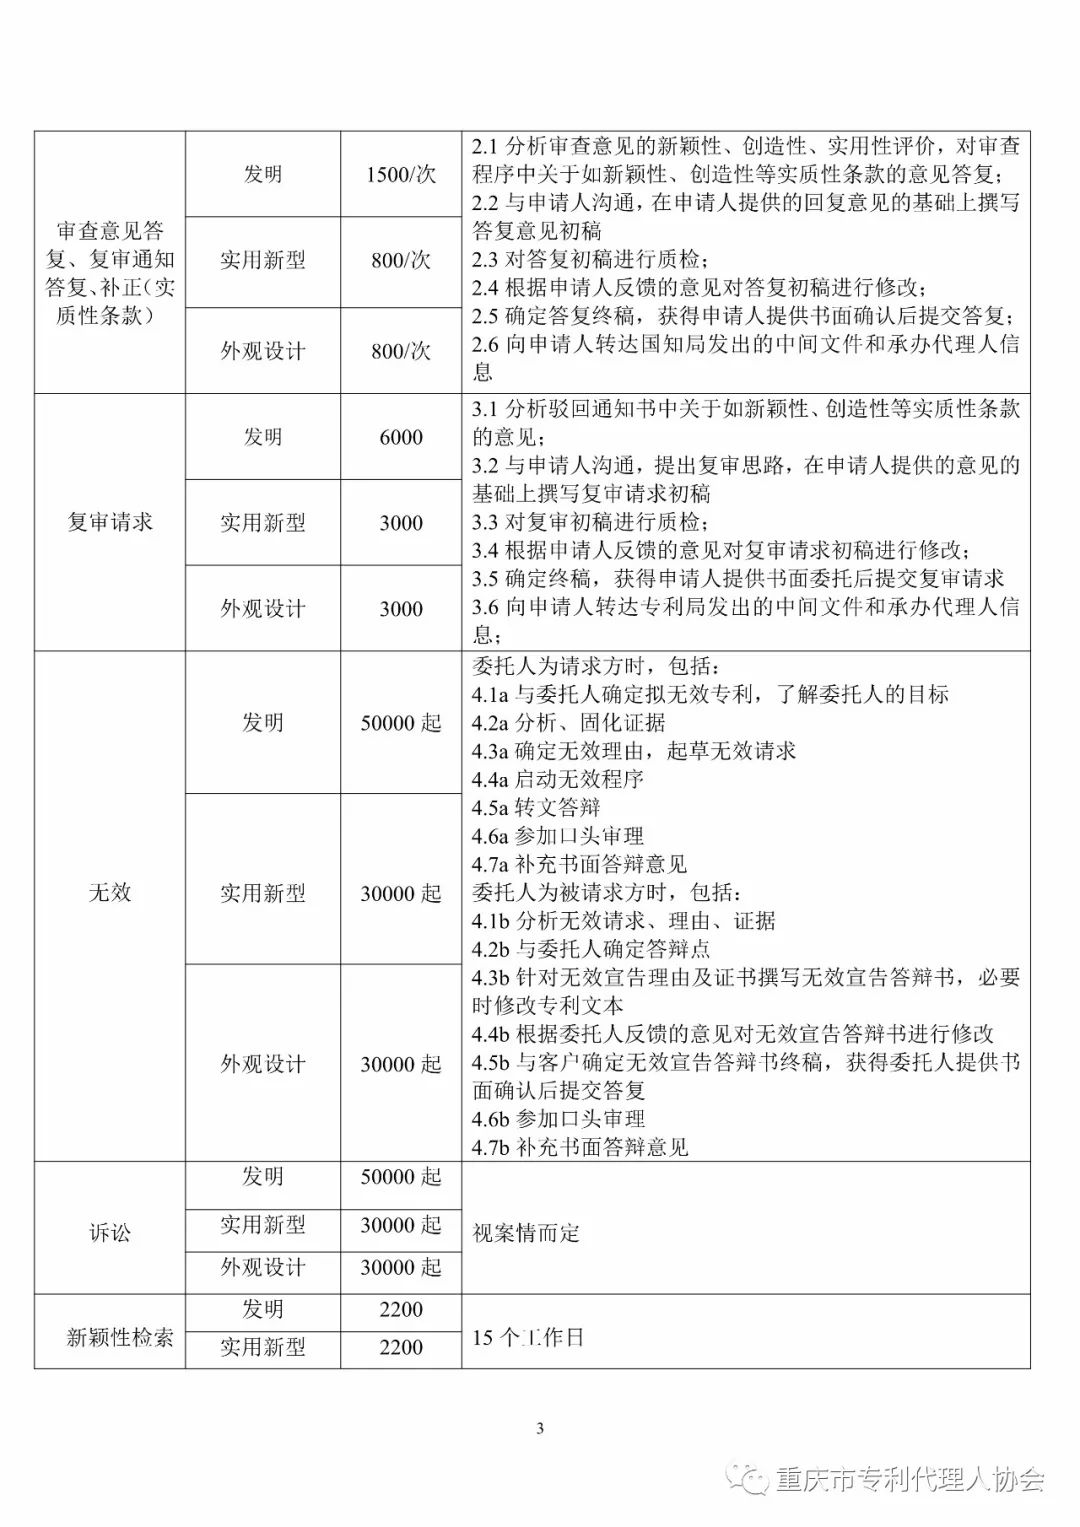 震惊！重庆市专代协会发布的「专利代理服务收费指导标准」被举报